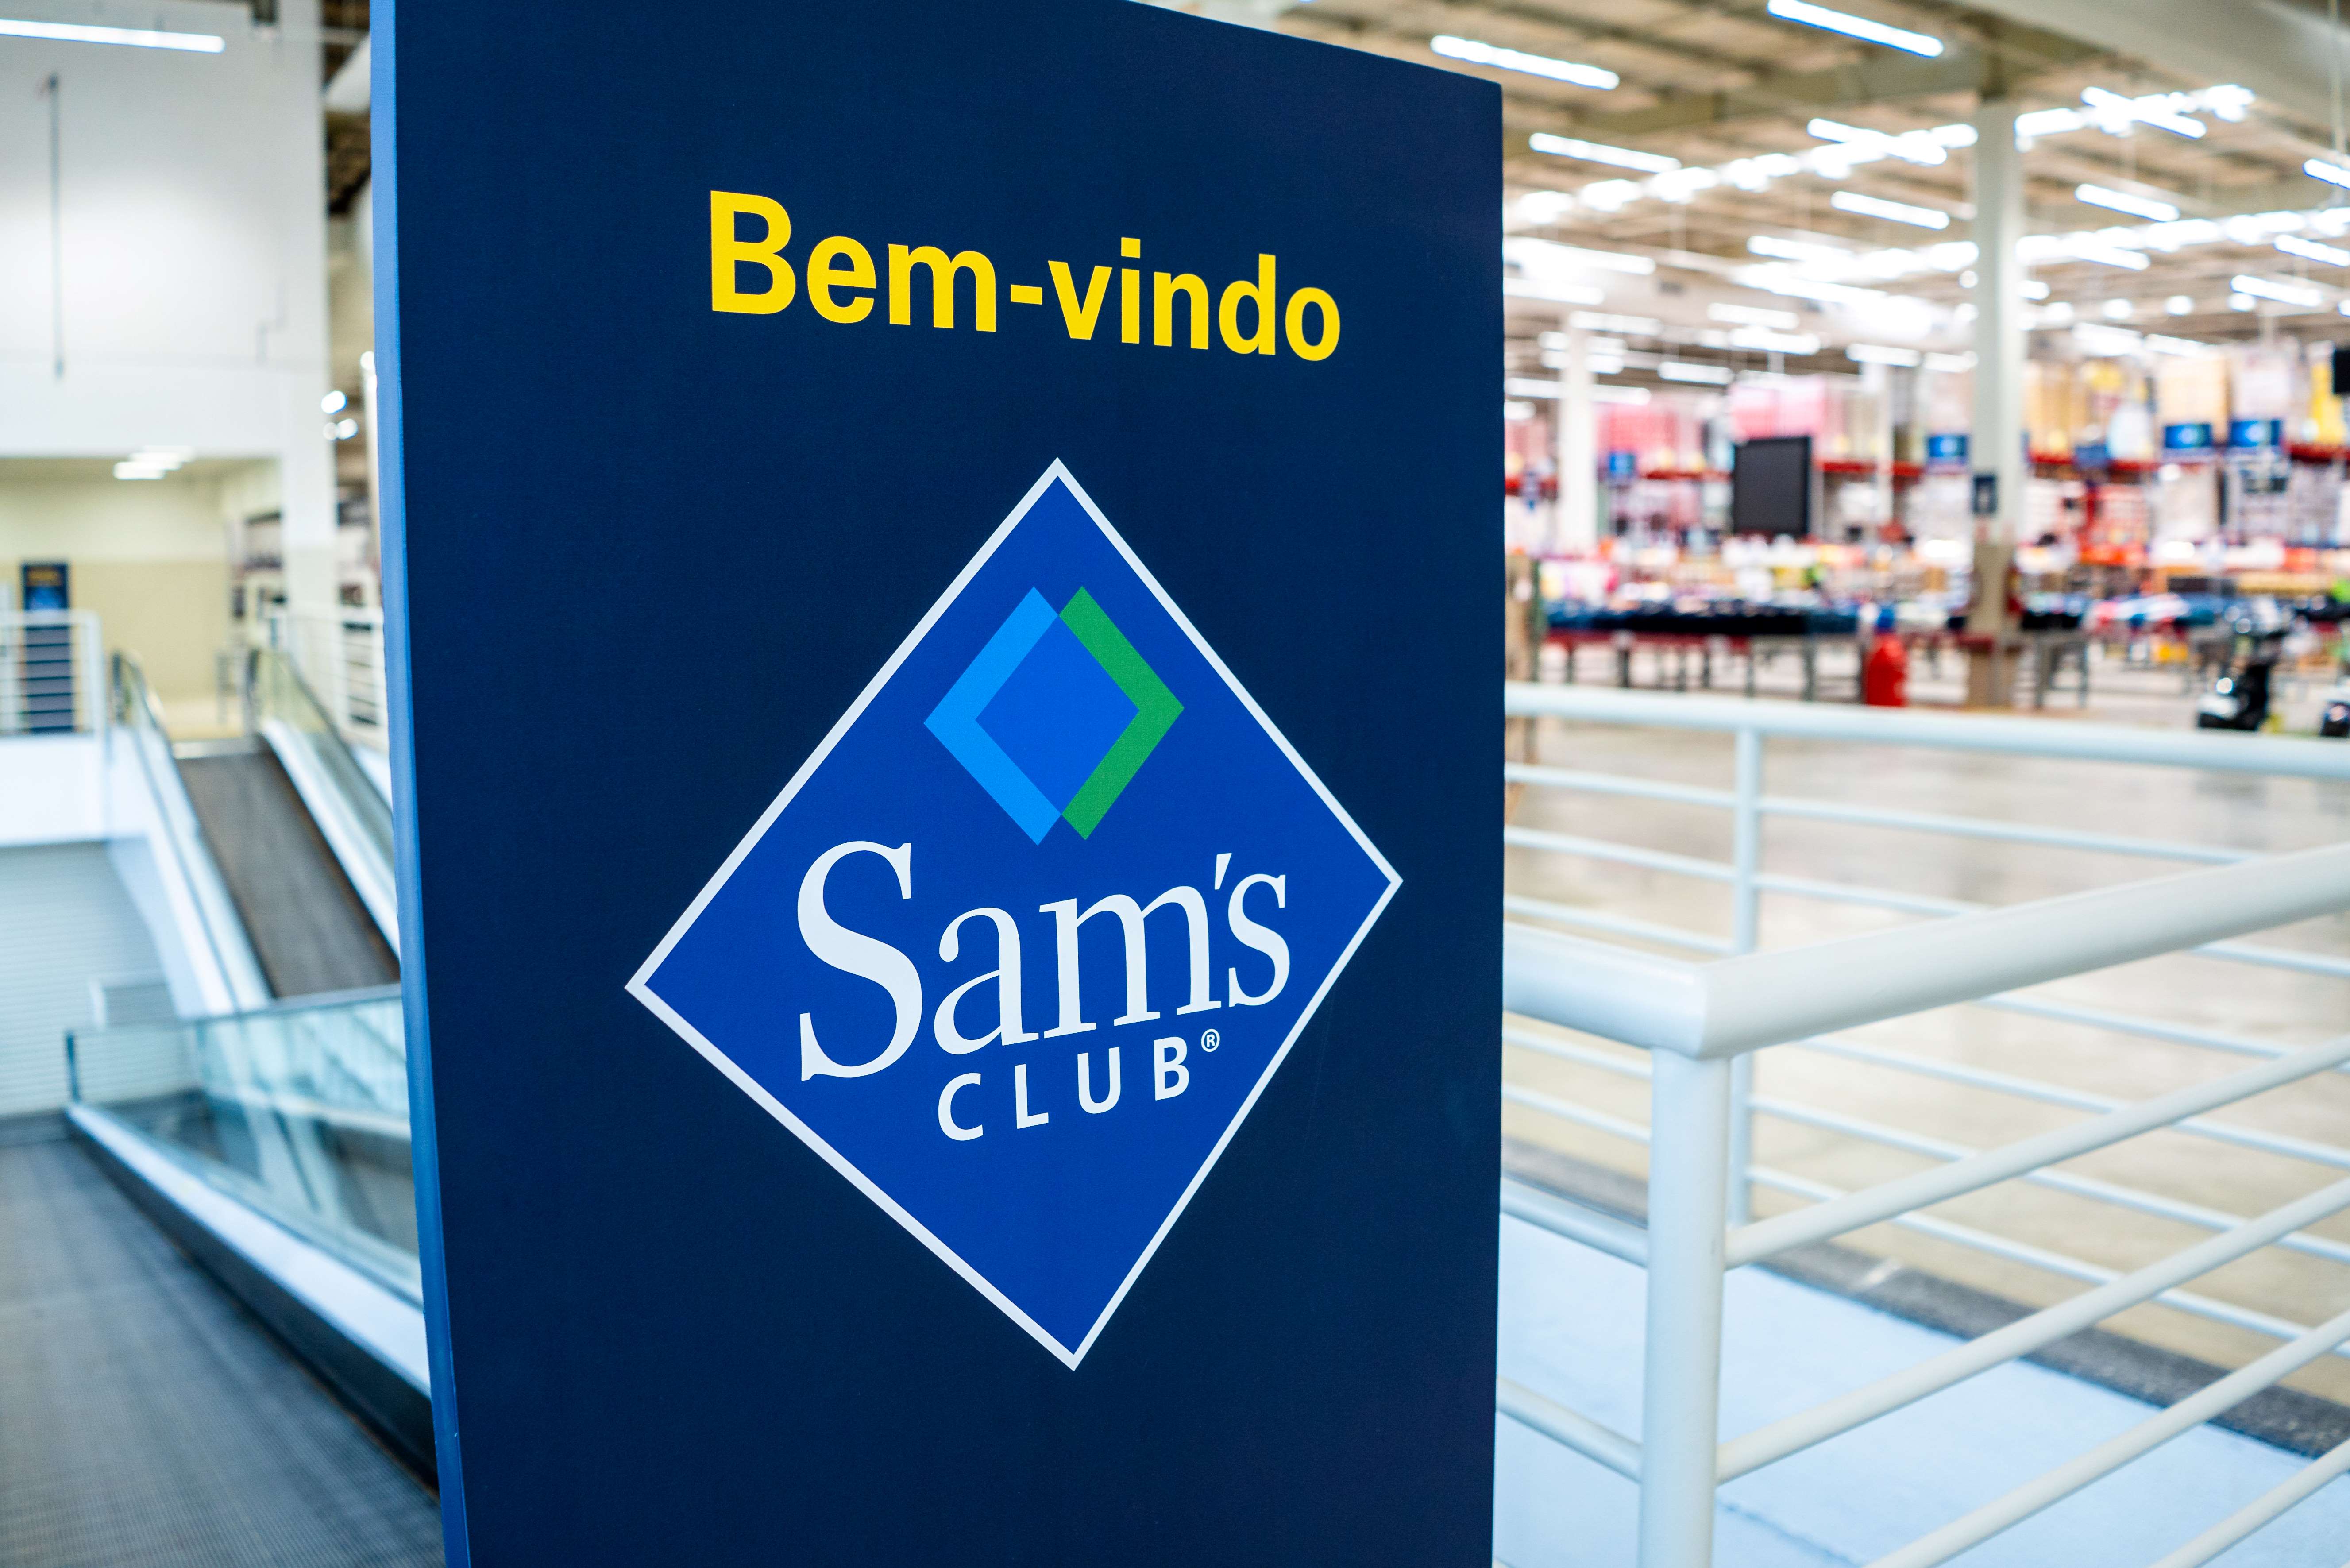 Único clube de compras do país, Sam's Club inaugura primeira loja em Bauru  - Cidade - Jovem Pan News - Bauru | Esportes, entretenimento, notícias e  vídeos com credibilidade